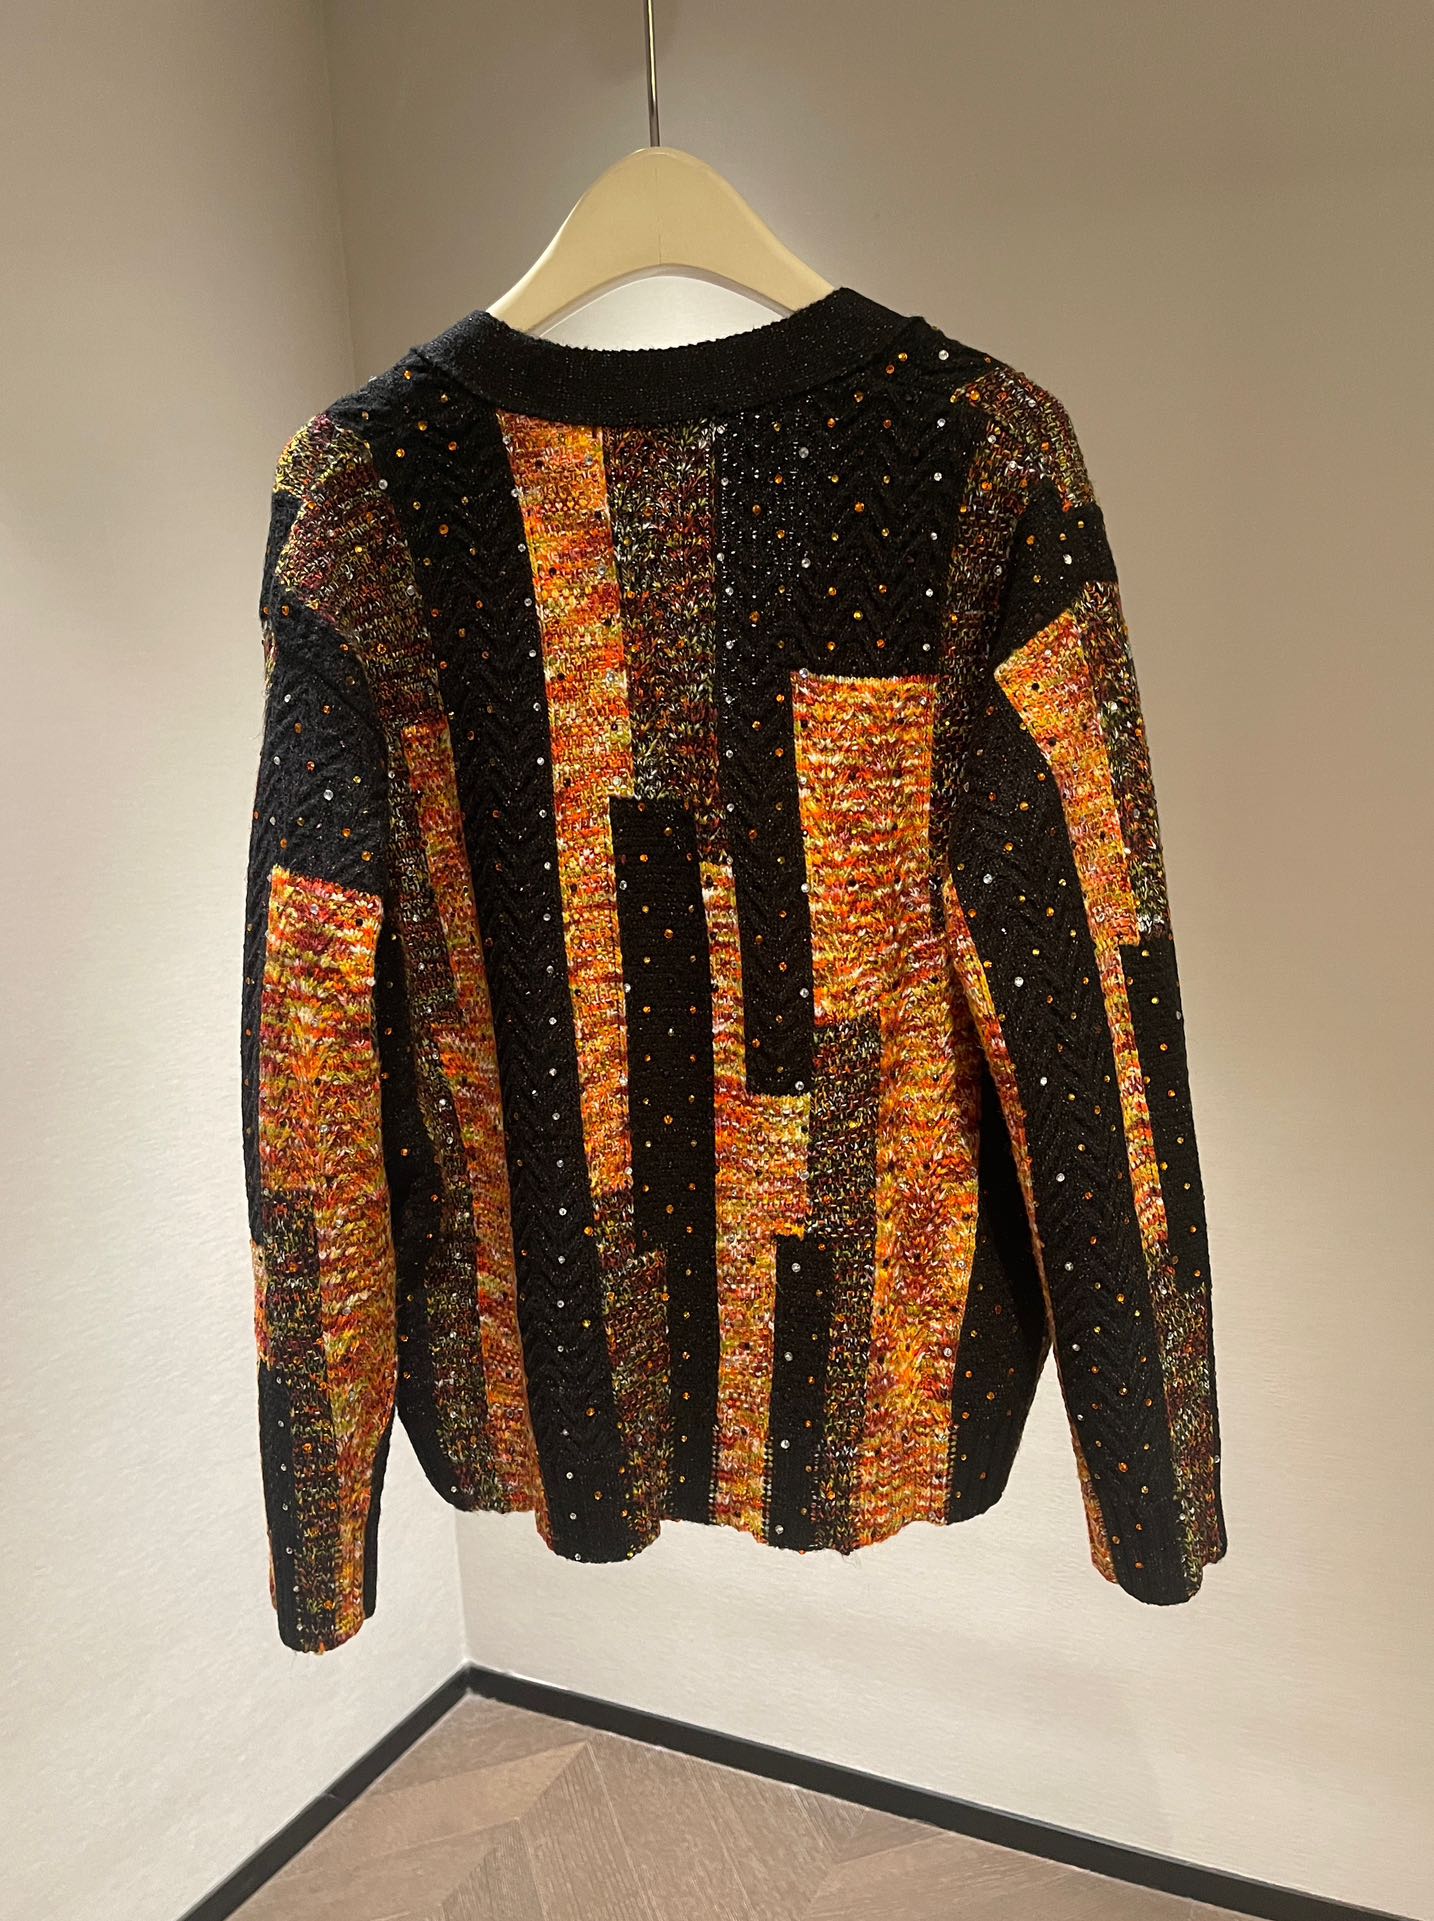 2023 Новые европейские женские и мужские дизайнерские свитера в стиле ретро, классическая роскошная толстовка для мужчин, вышивка букв, круглый вырез, удобный высококачественный джемпер Y1